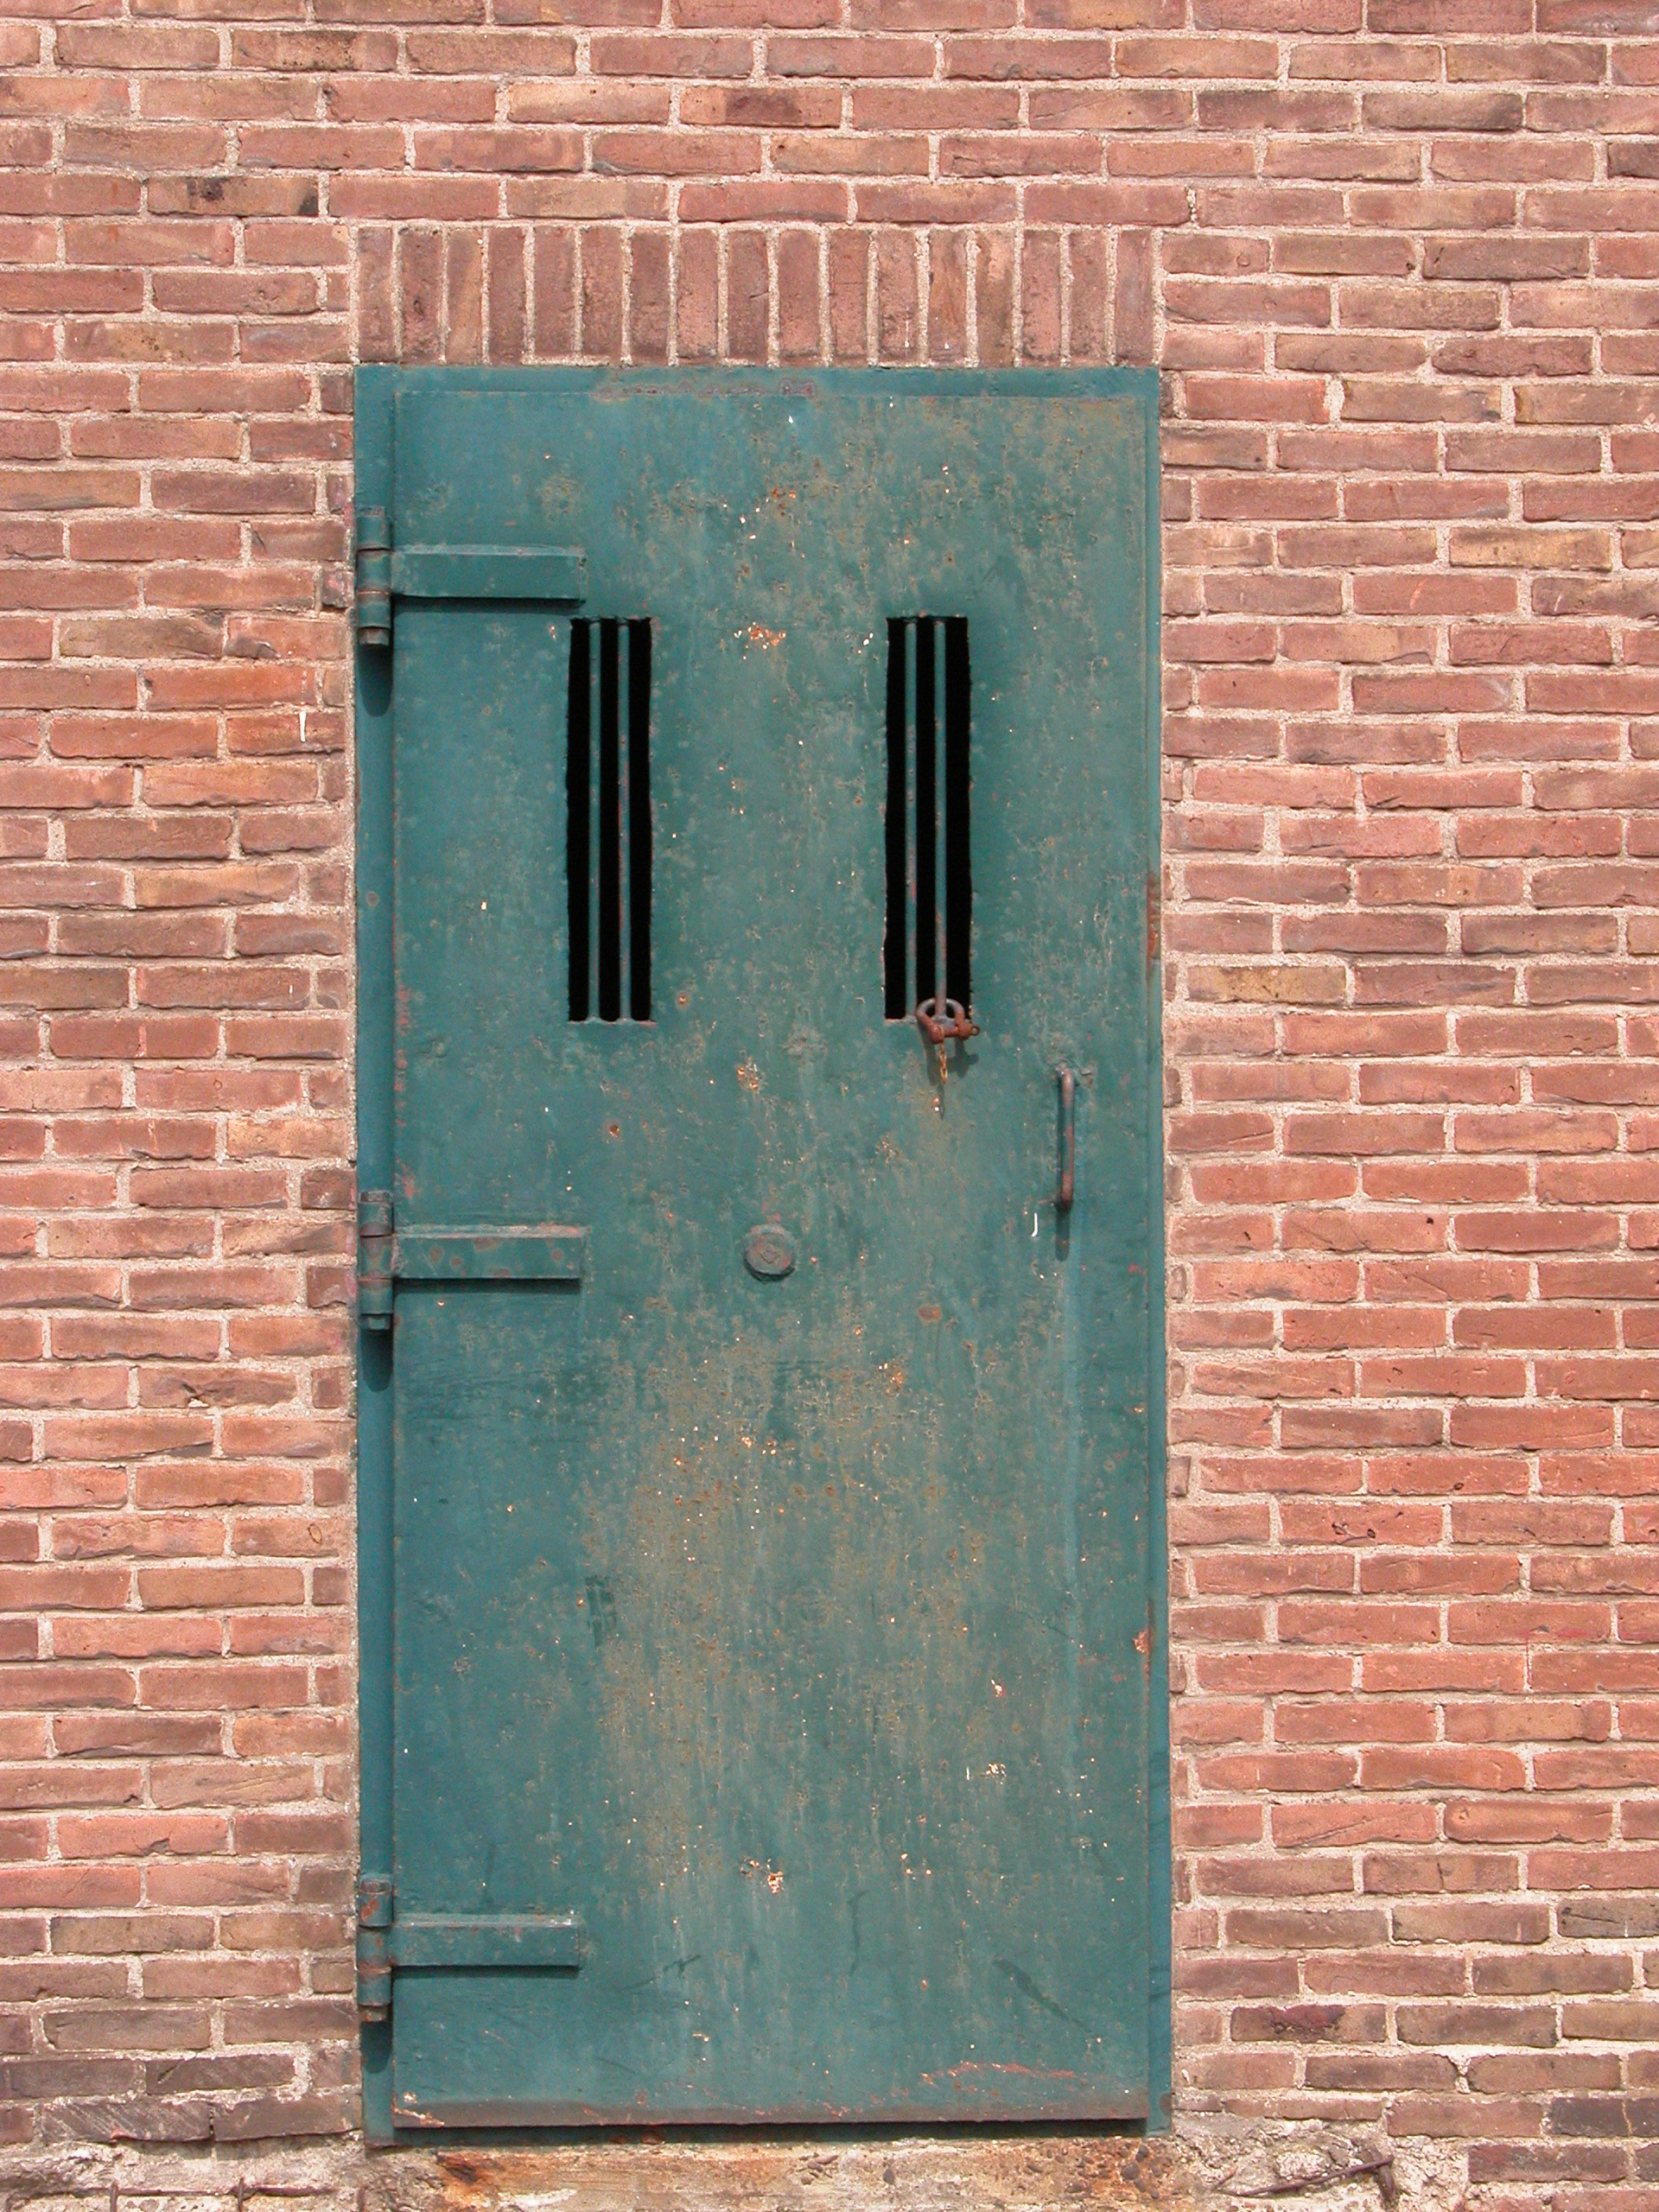 steel door security bars prison locked in lock